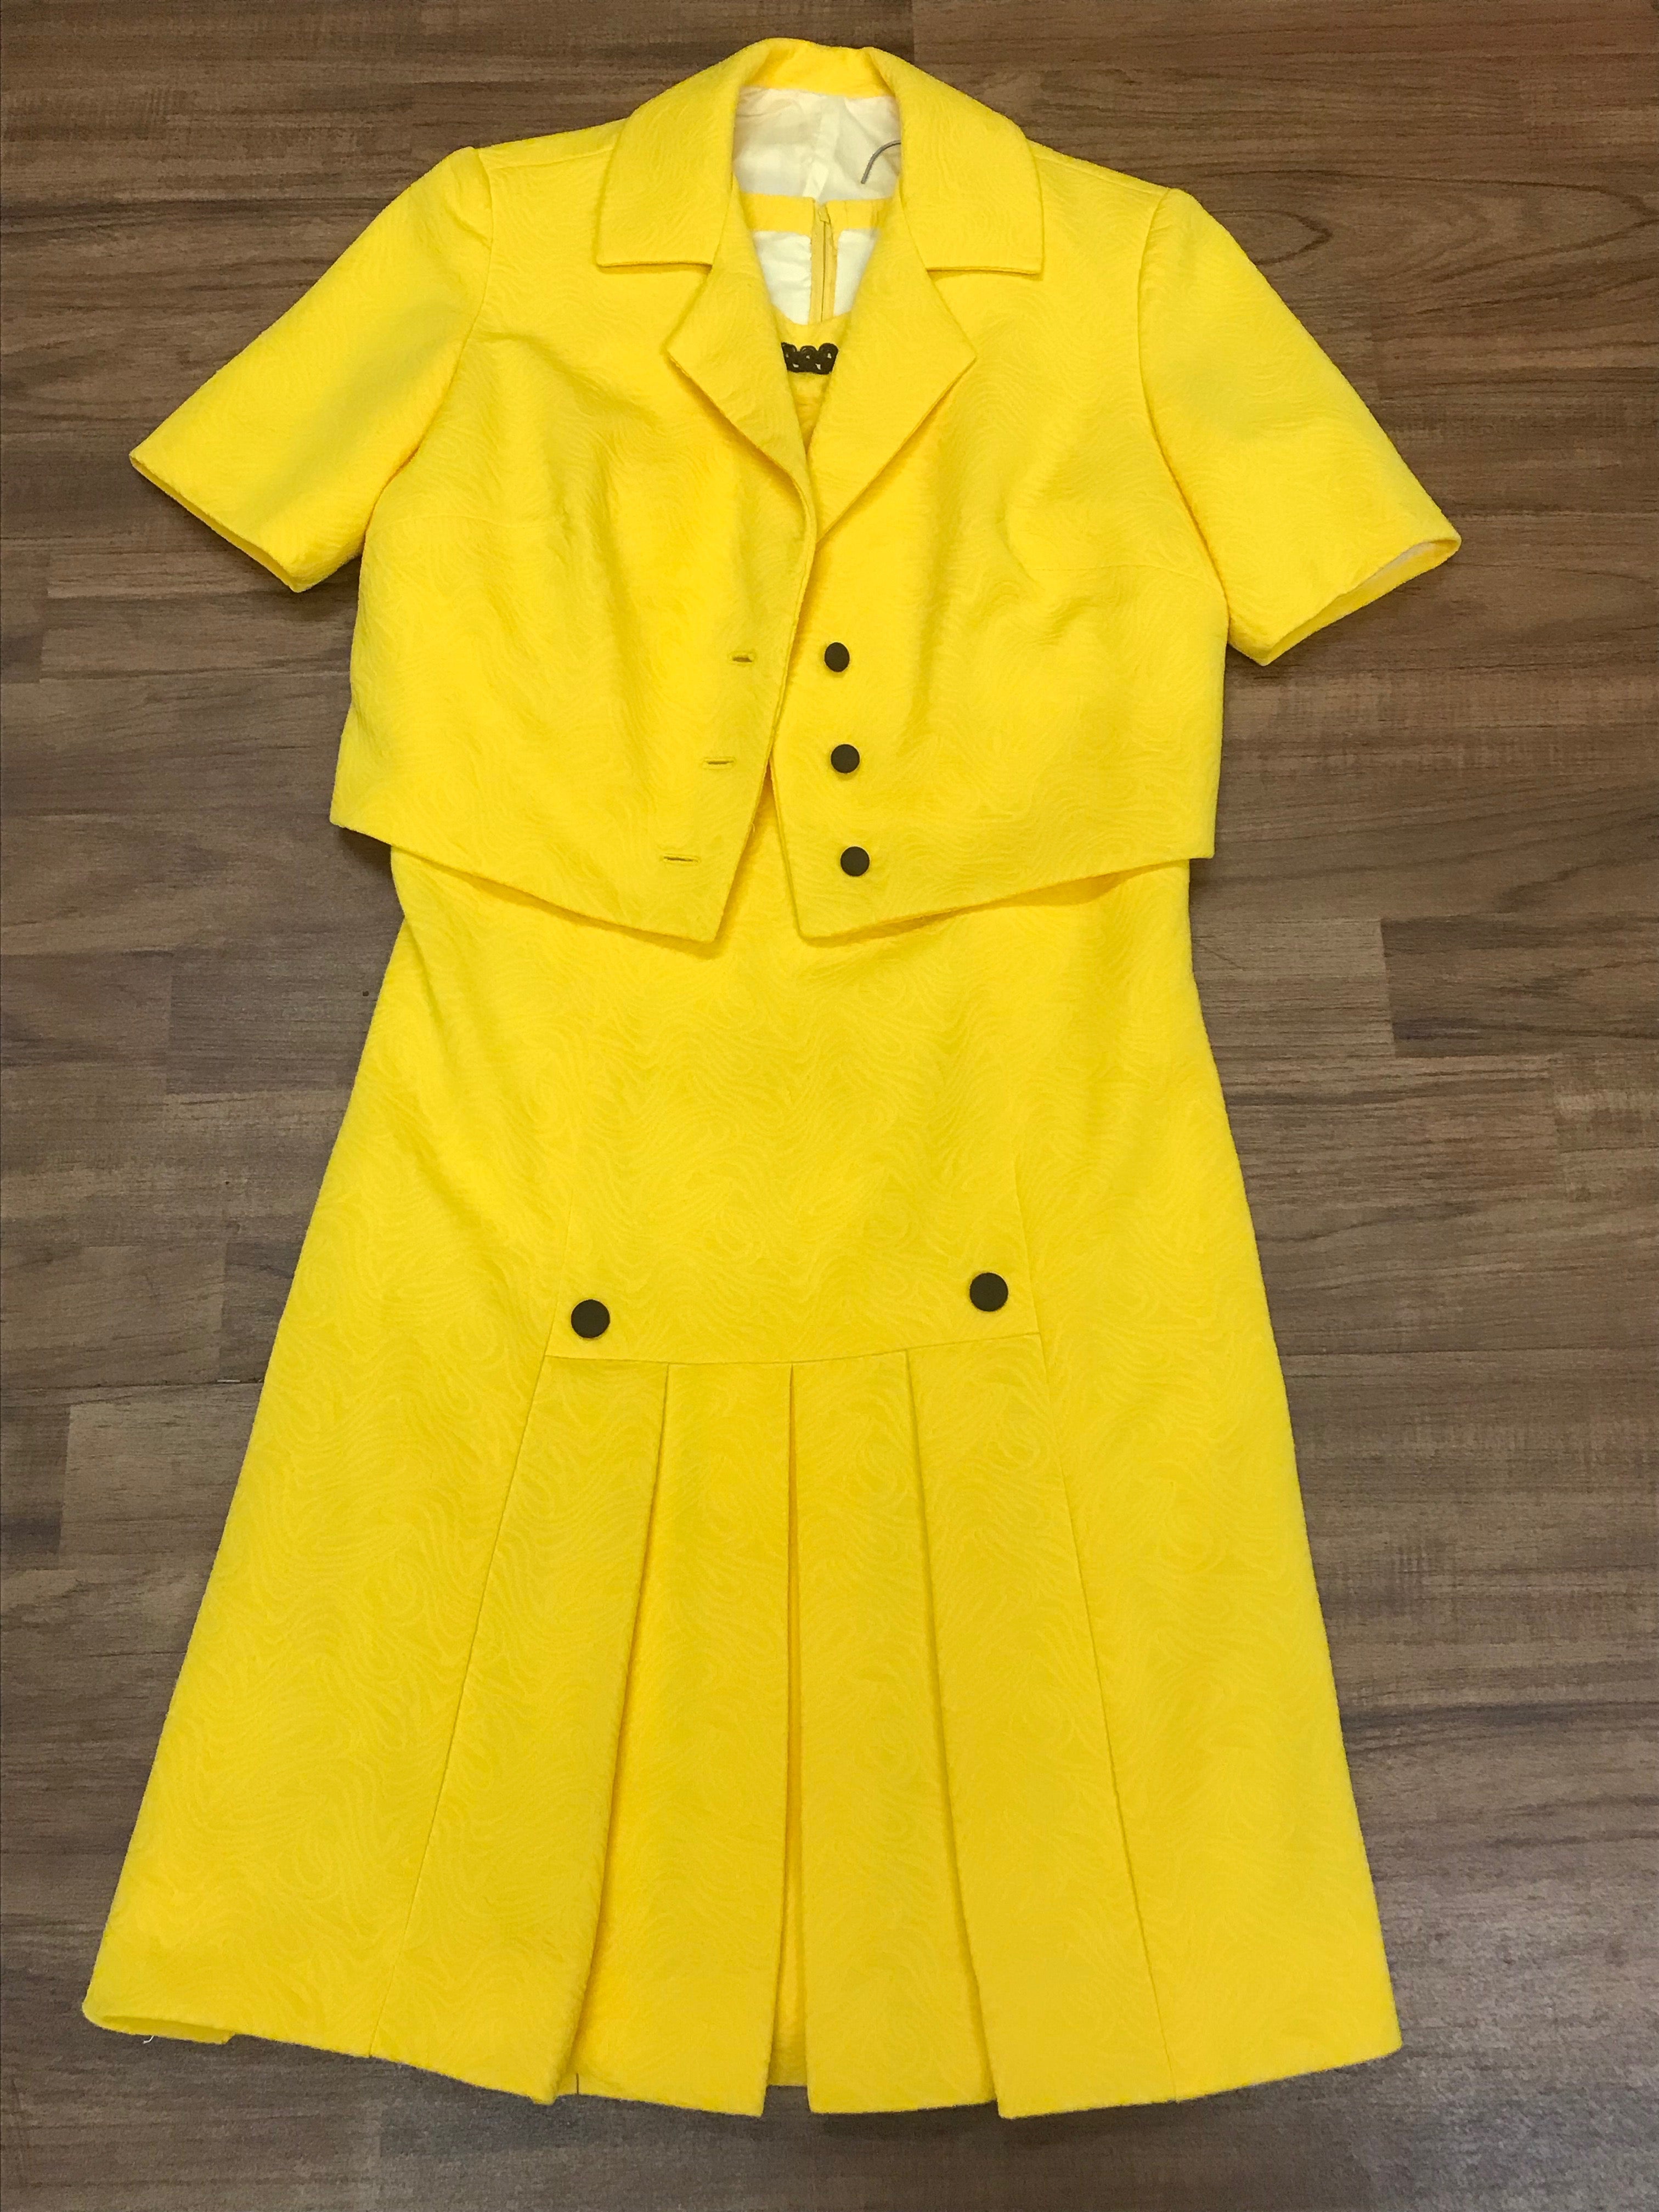 70er Jahre Vintage Kleid mit Jacke in gelb. Kostüm Gr.40